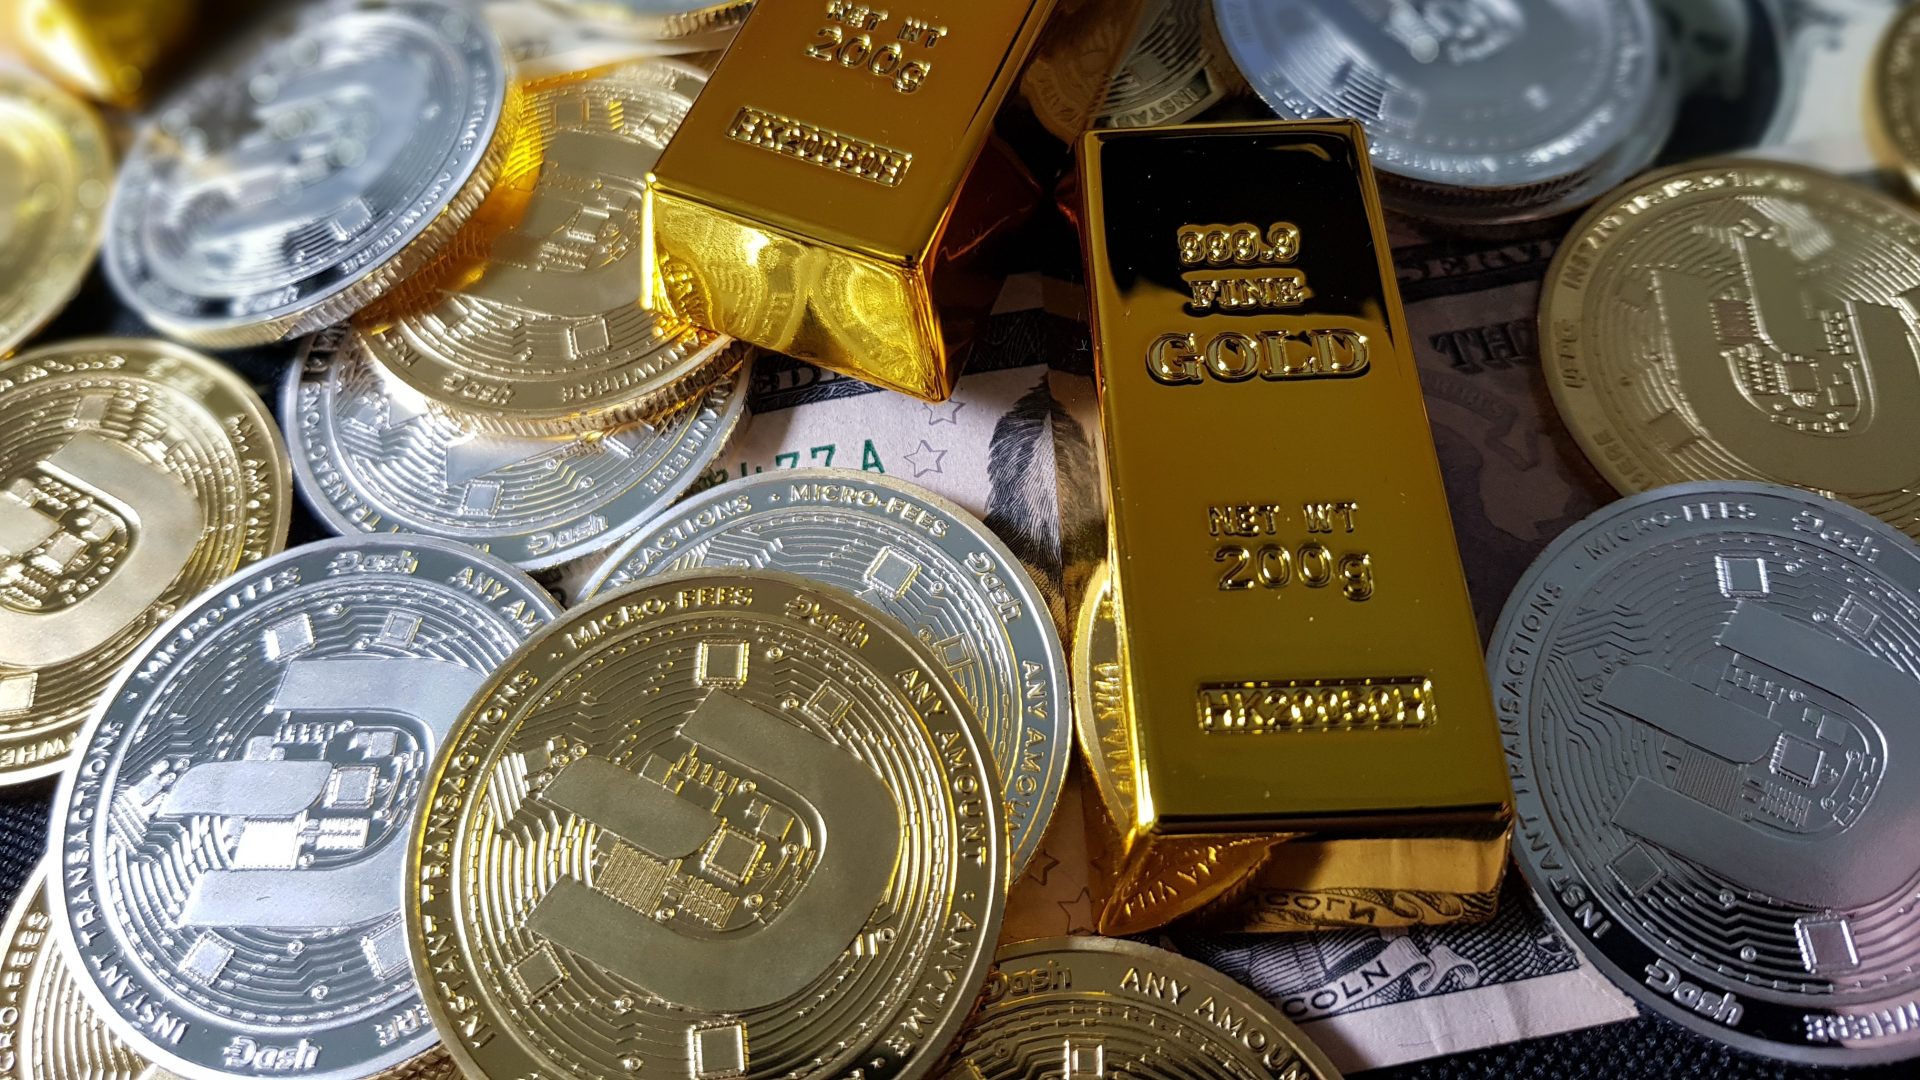 ‘Rich Dad’ R. Kiyosaki: Save gold, silver, Bitcoin, as leaders want war